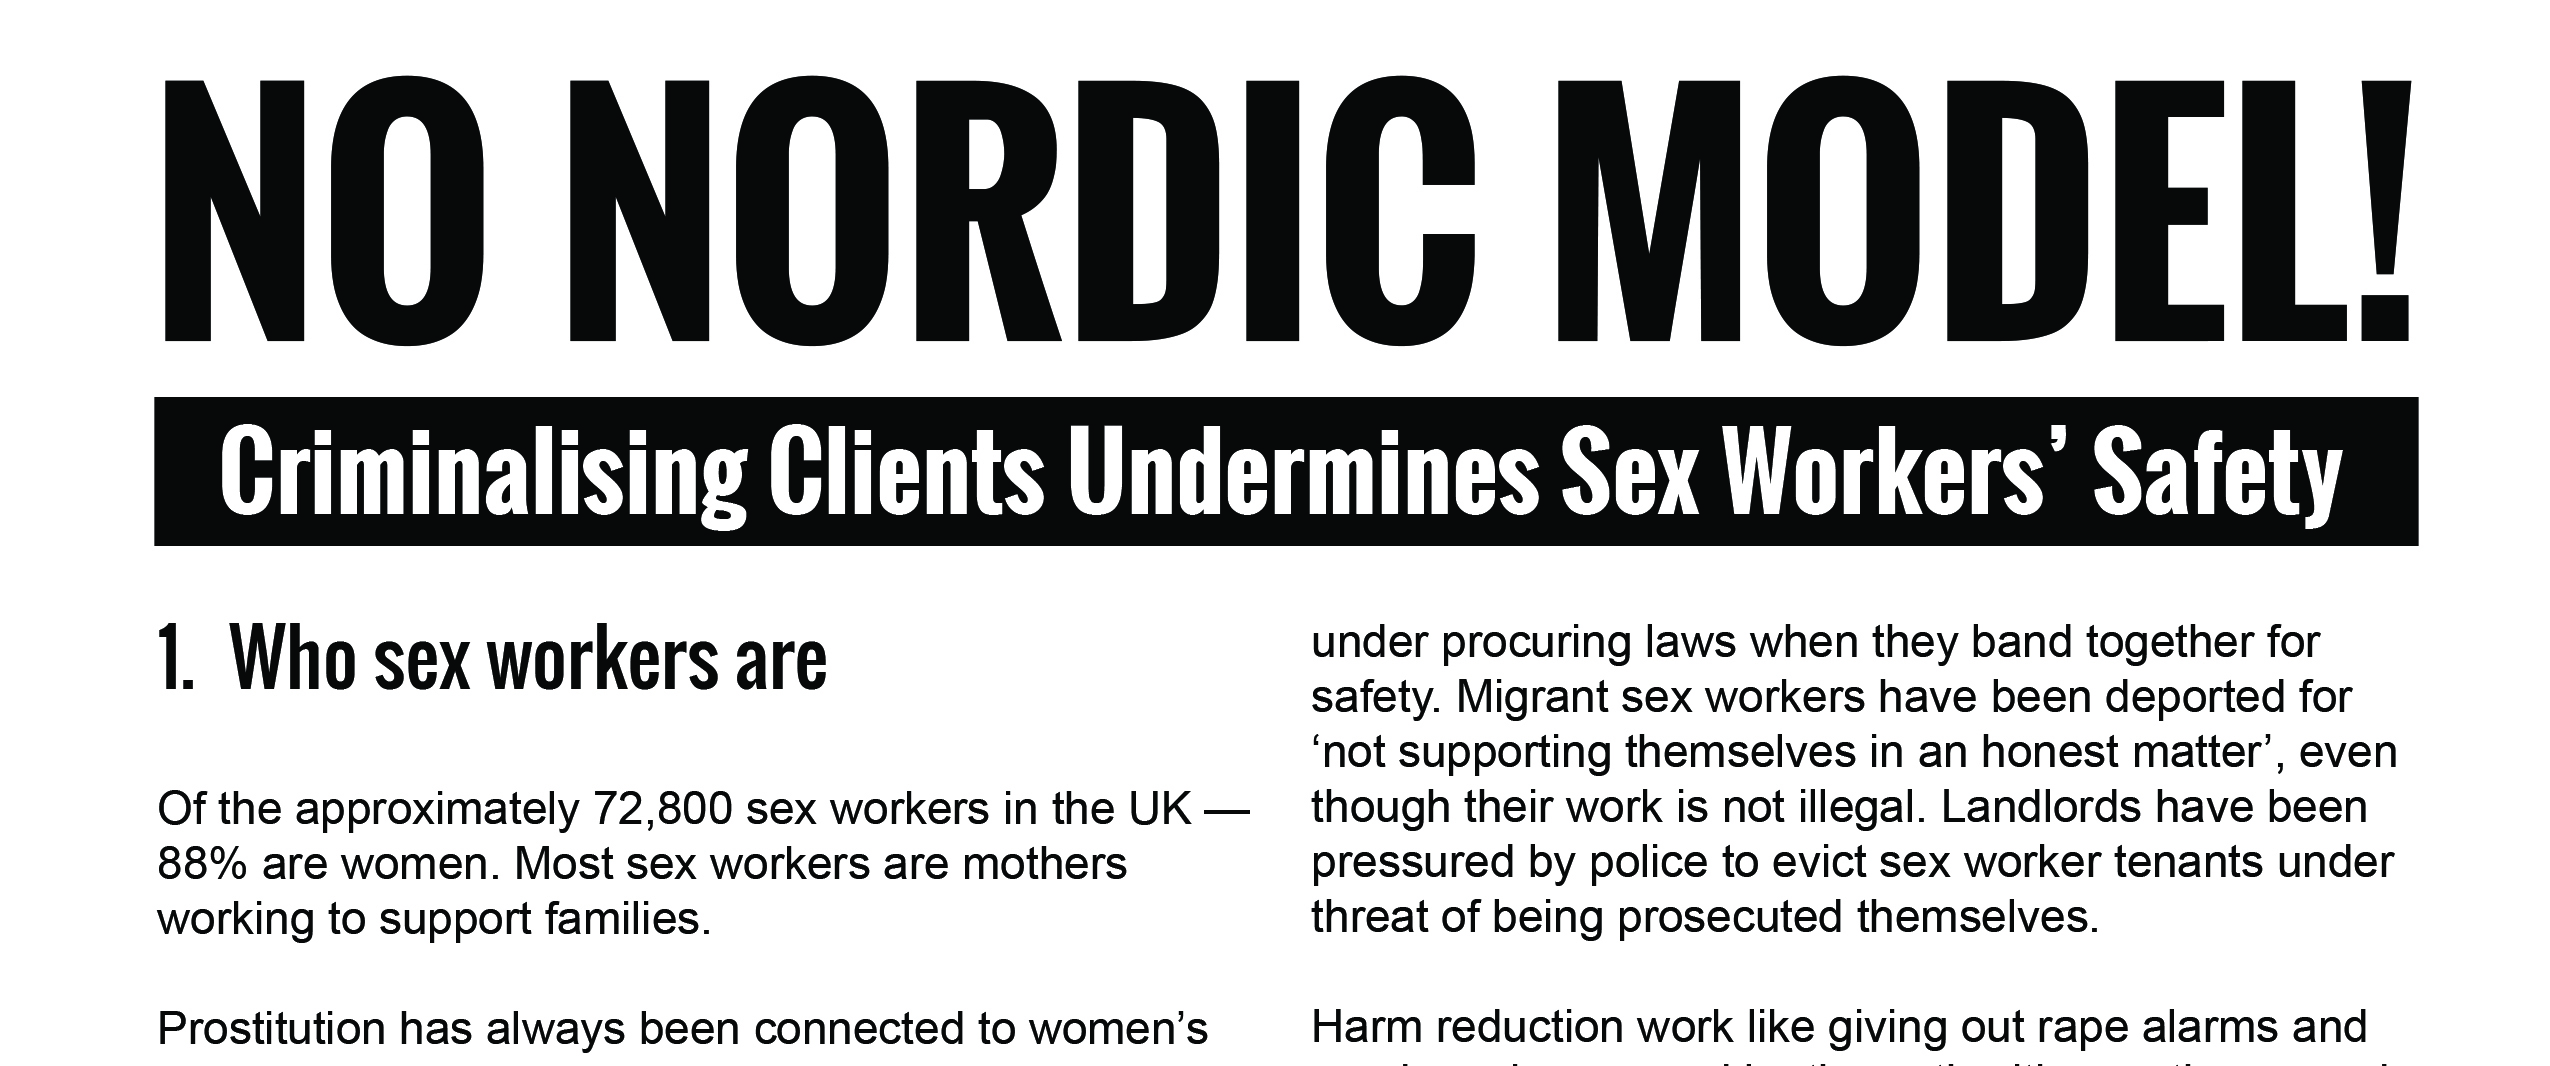 Resources - No Nordic Model